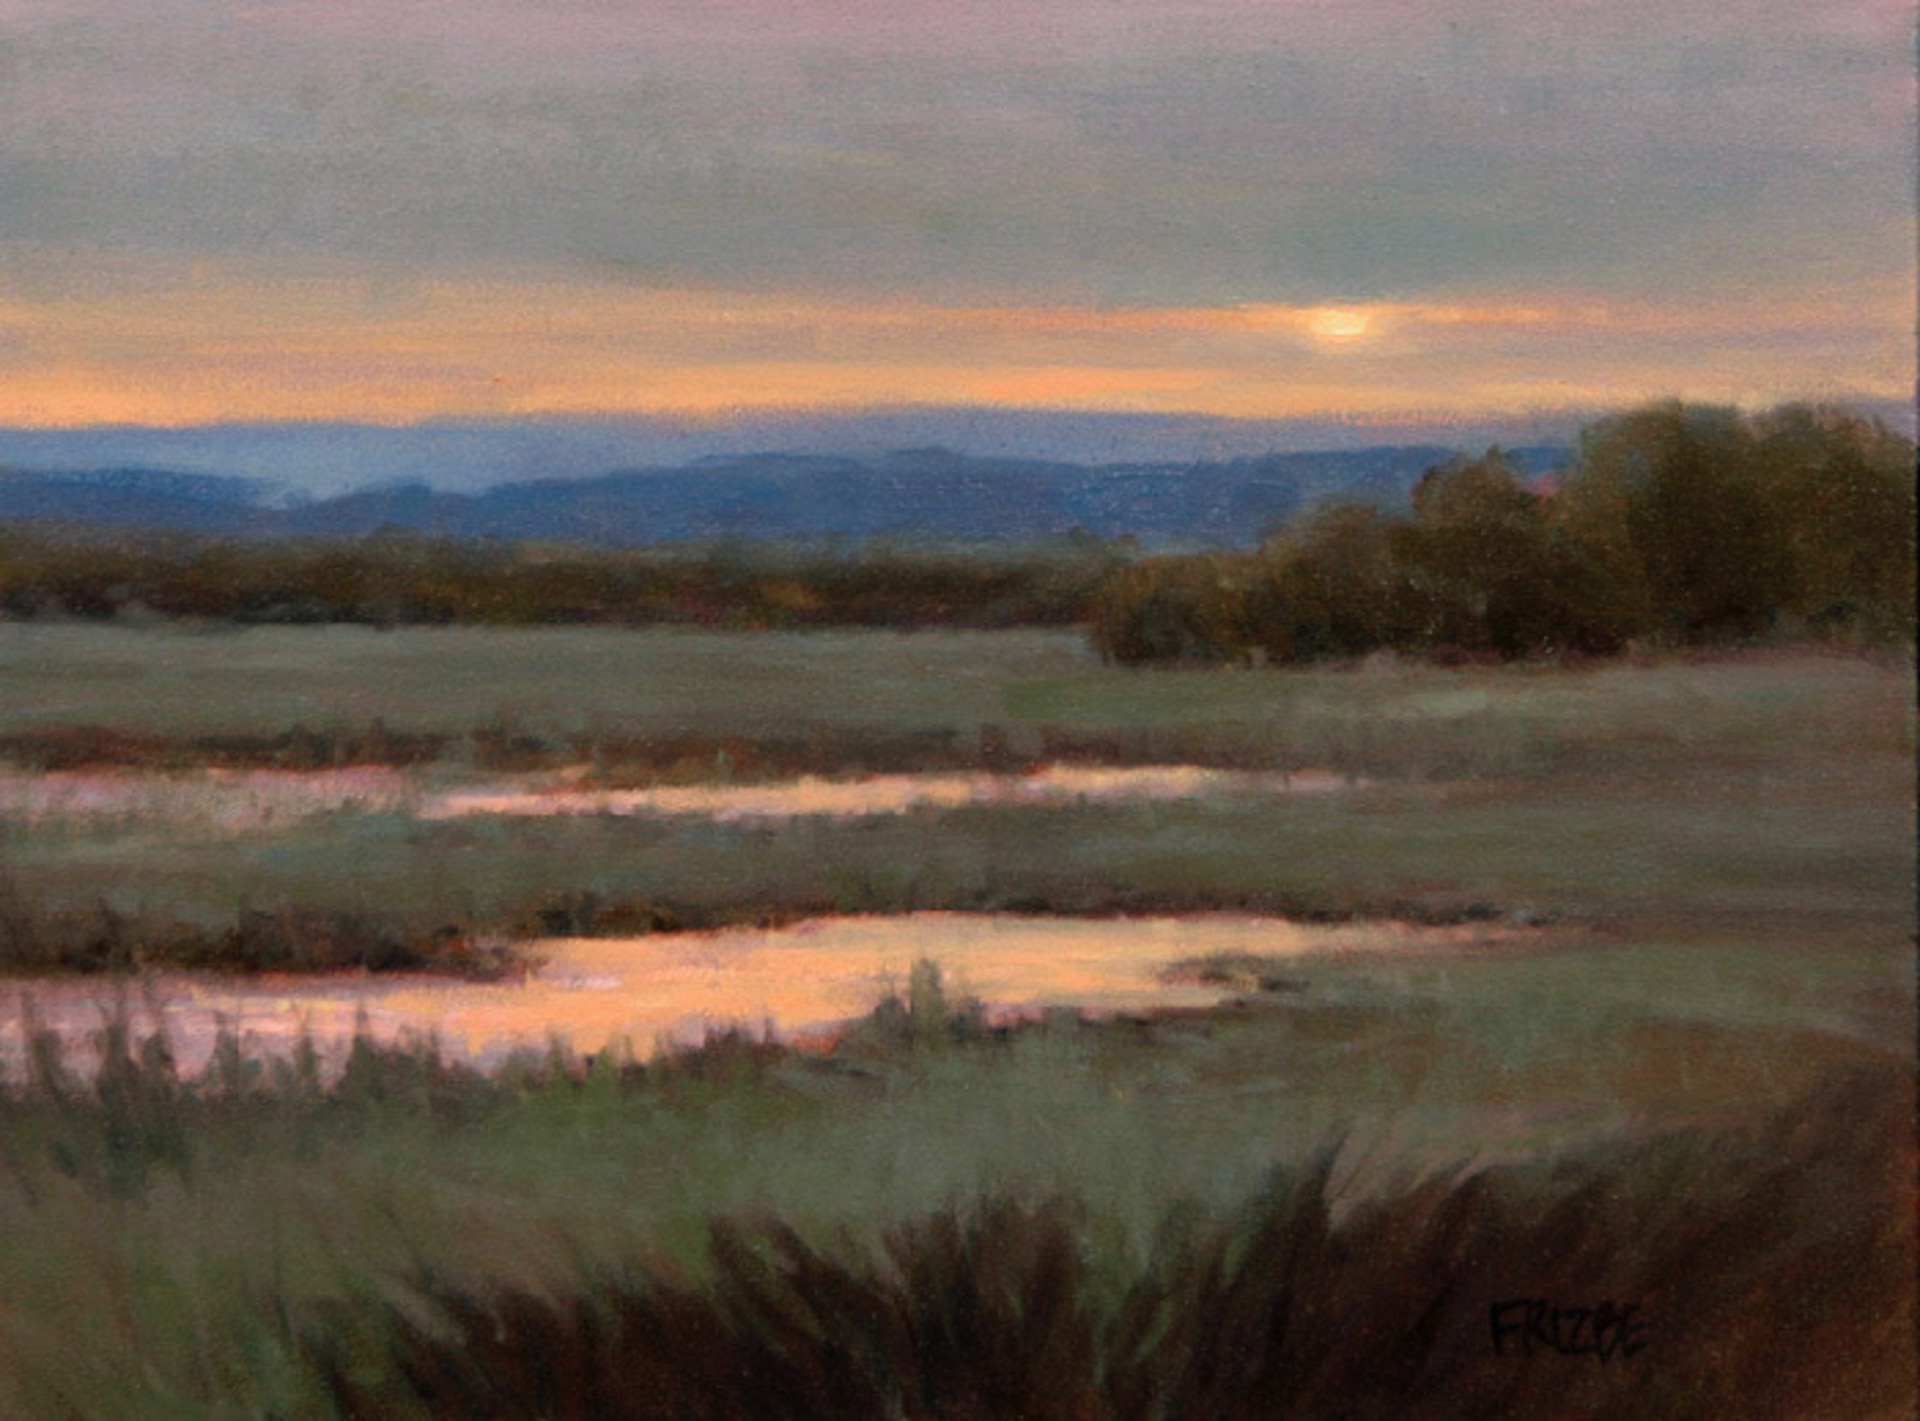 Reflection On The Pond by Paula Frizbe